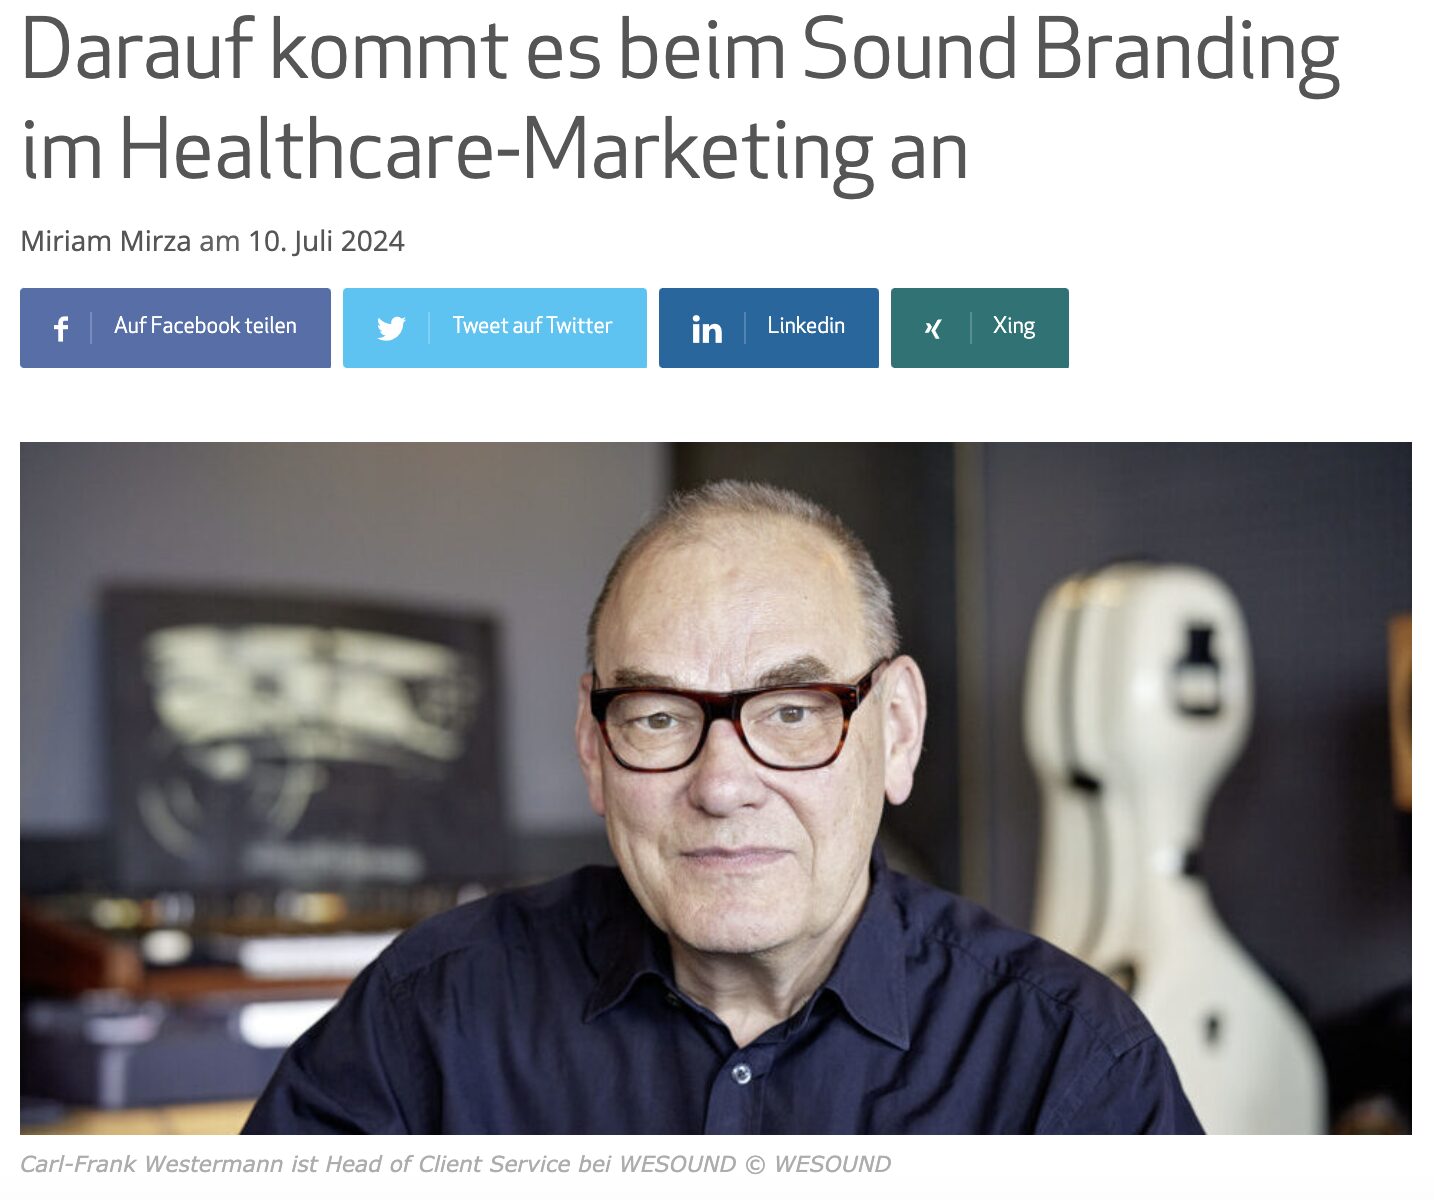 Das Magazin HEALTH RELATIONS hat mit Carl-Frank Westermann über Audio Branding für die Pharma- und Healthcare Branche gesprochen. Lest den vollständigen Artikel hier.